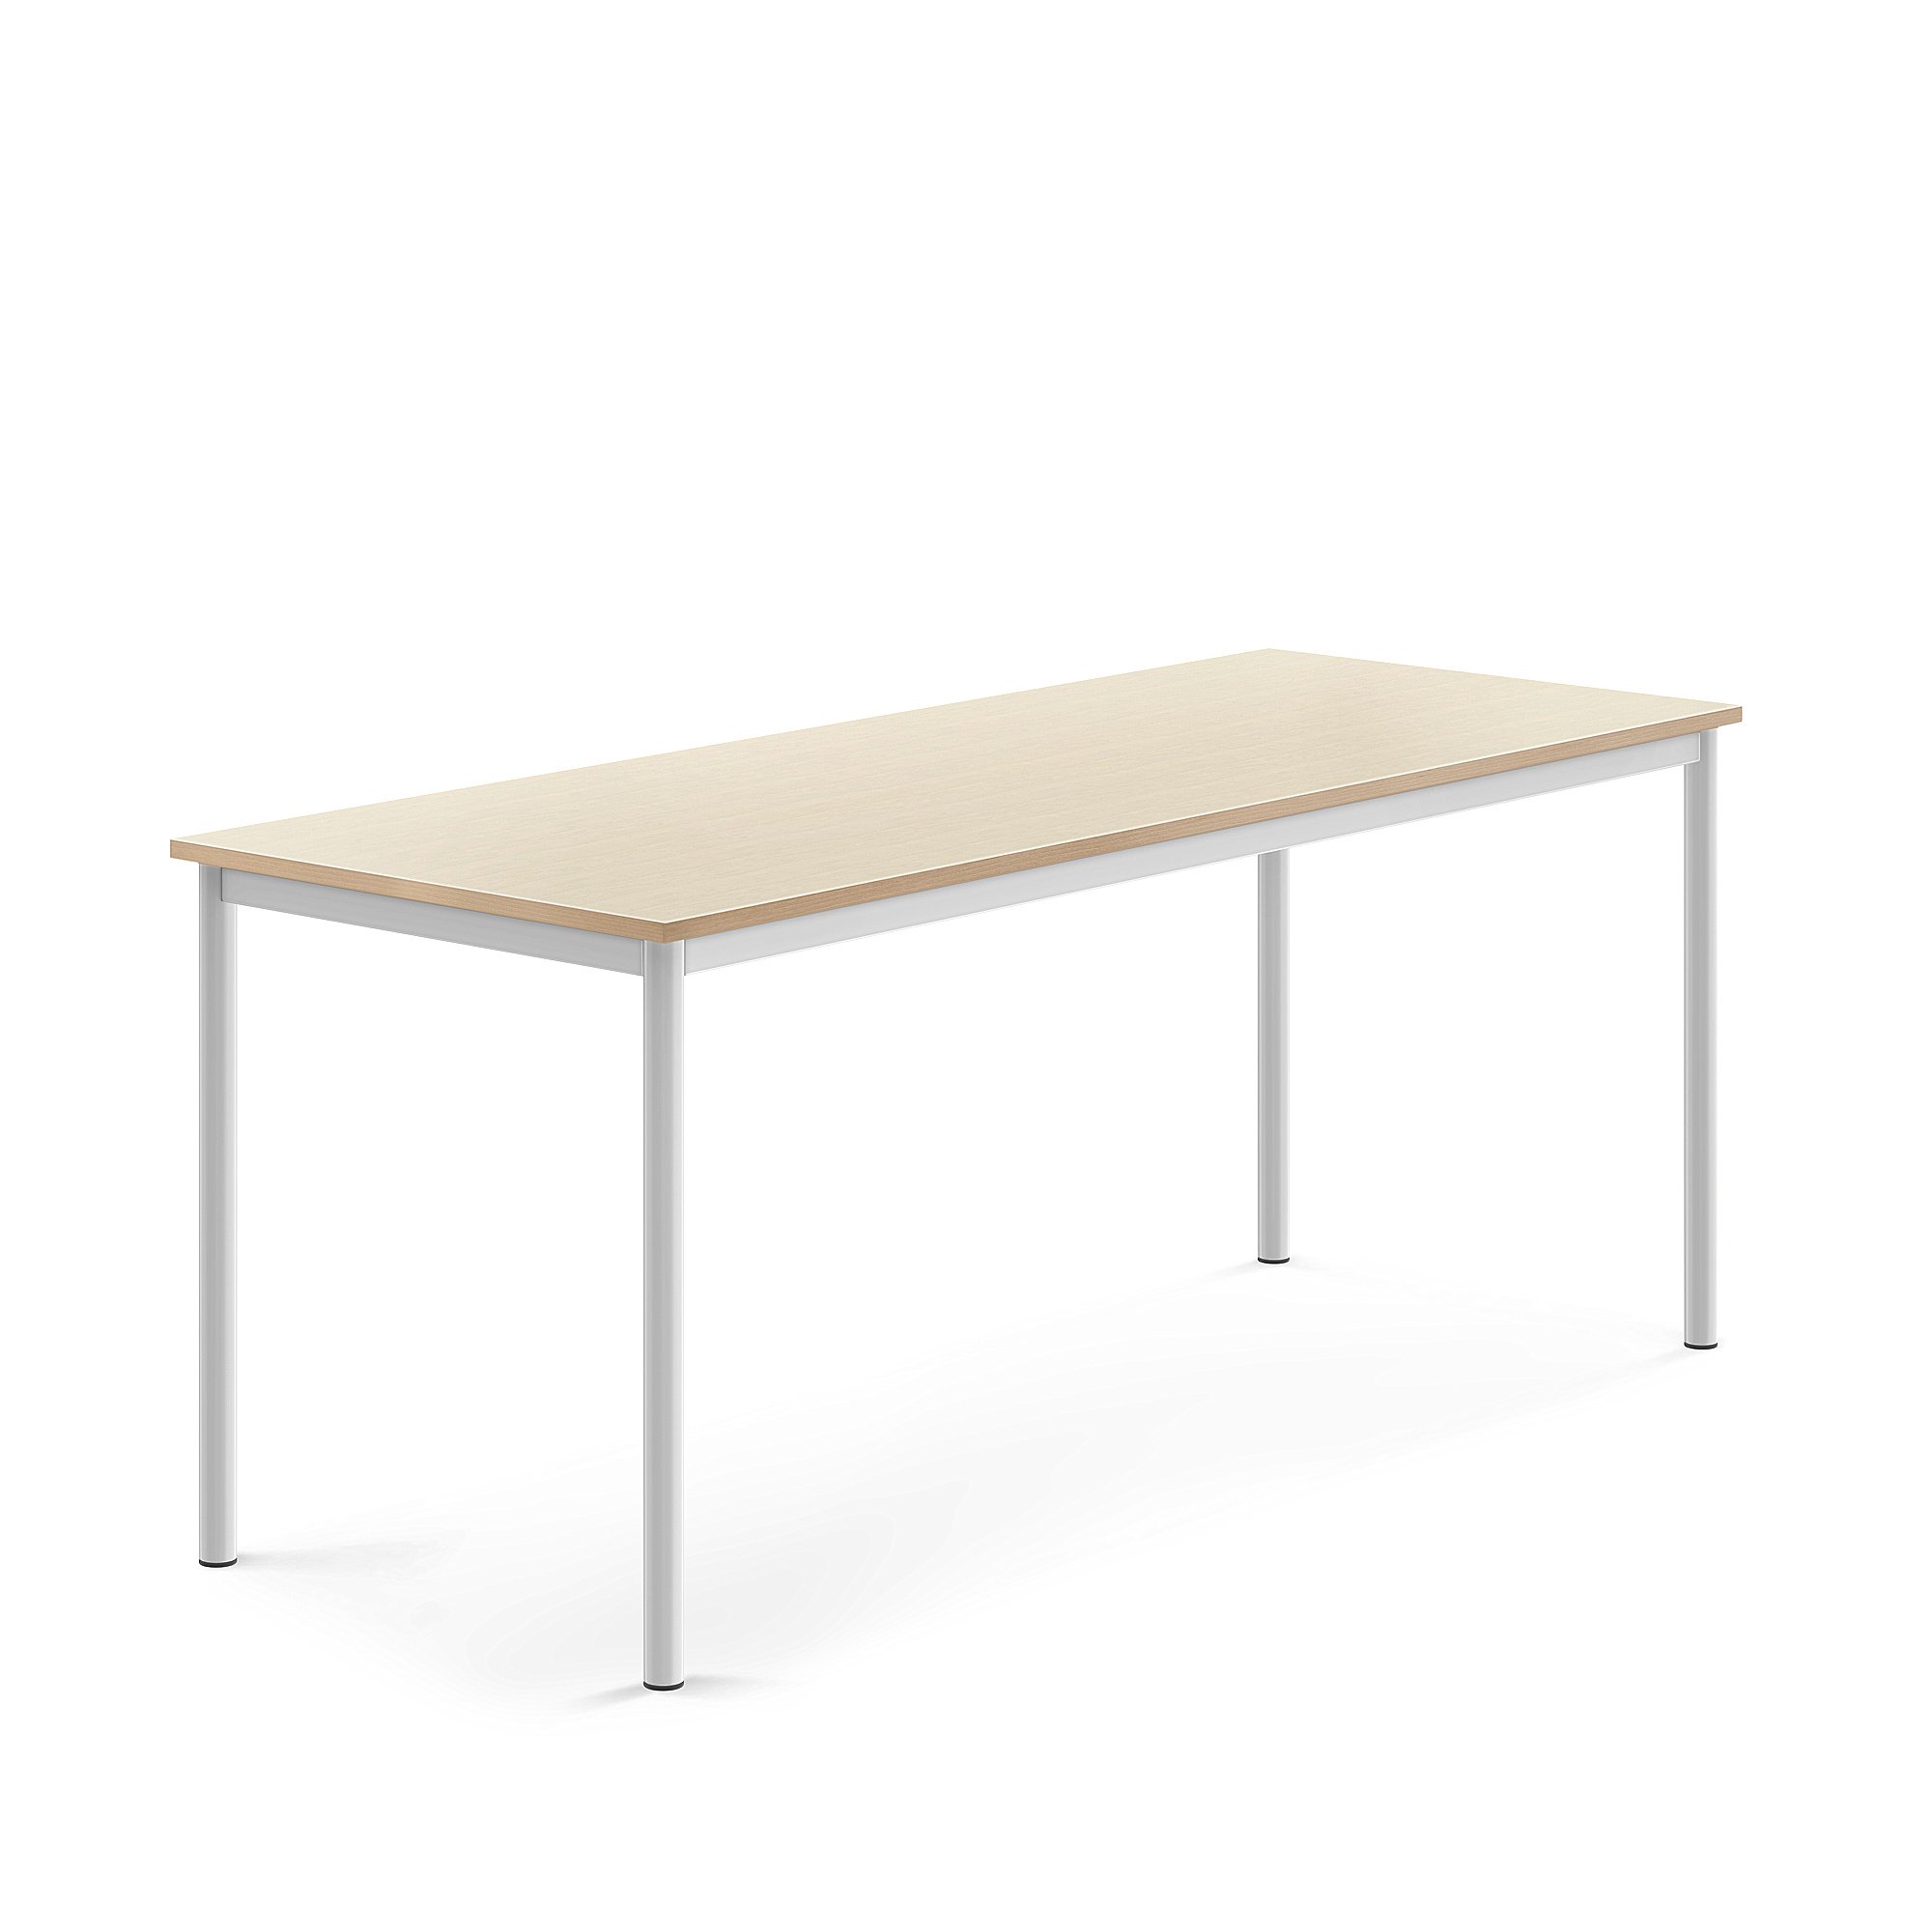 Stůl BORÅS, 1800x700x720 mm, bílé nohy, HPL deska, bříza